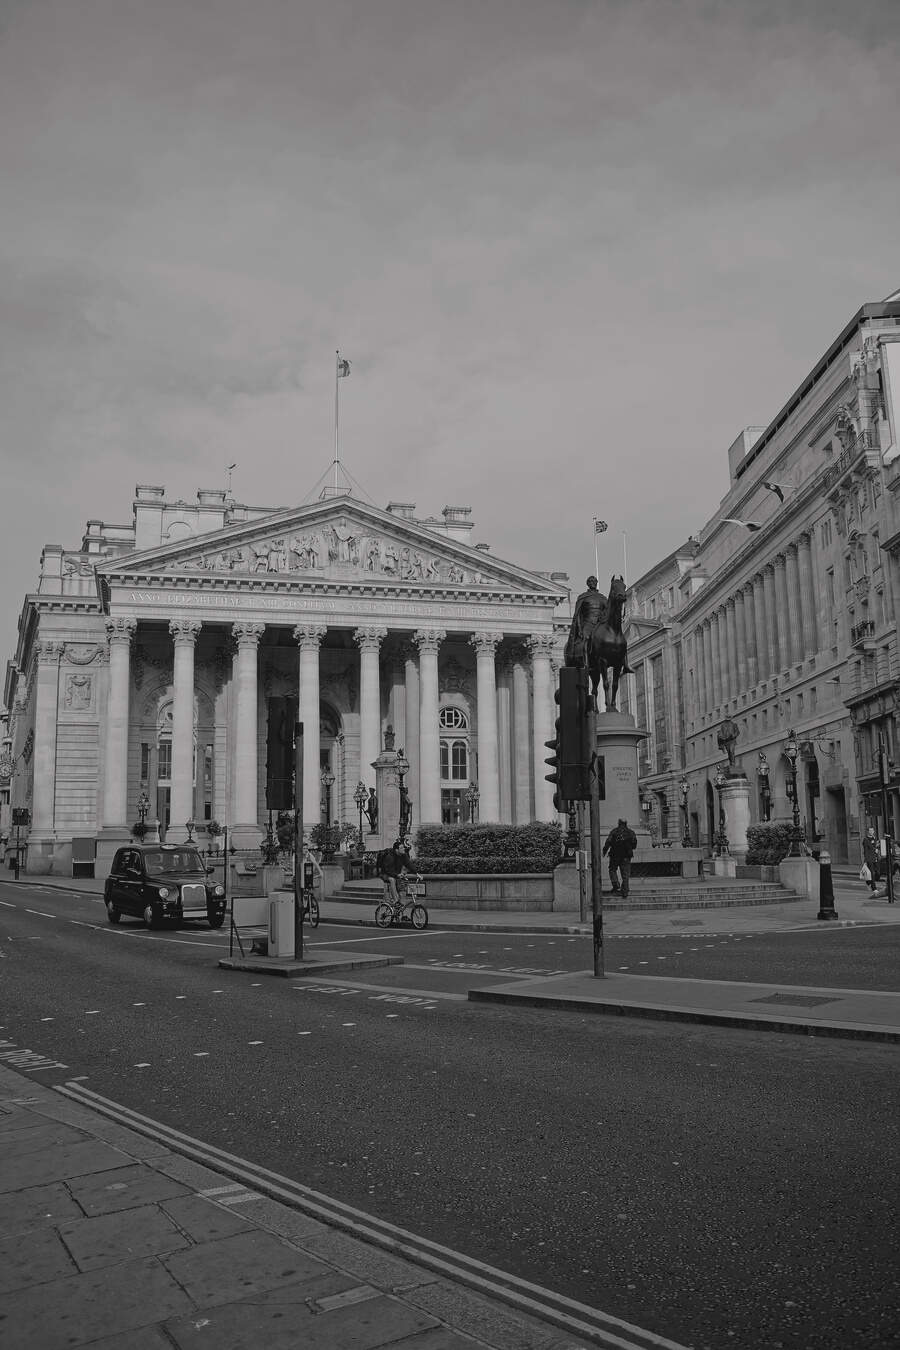 Royal Exchange in London UK